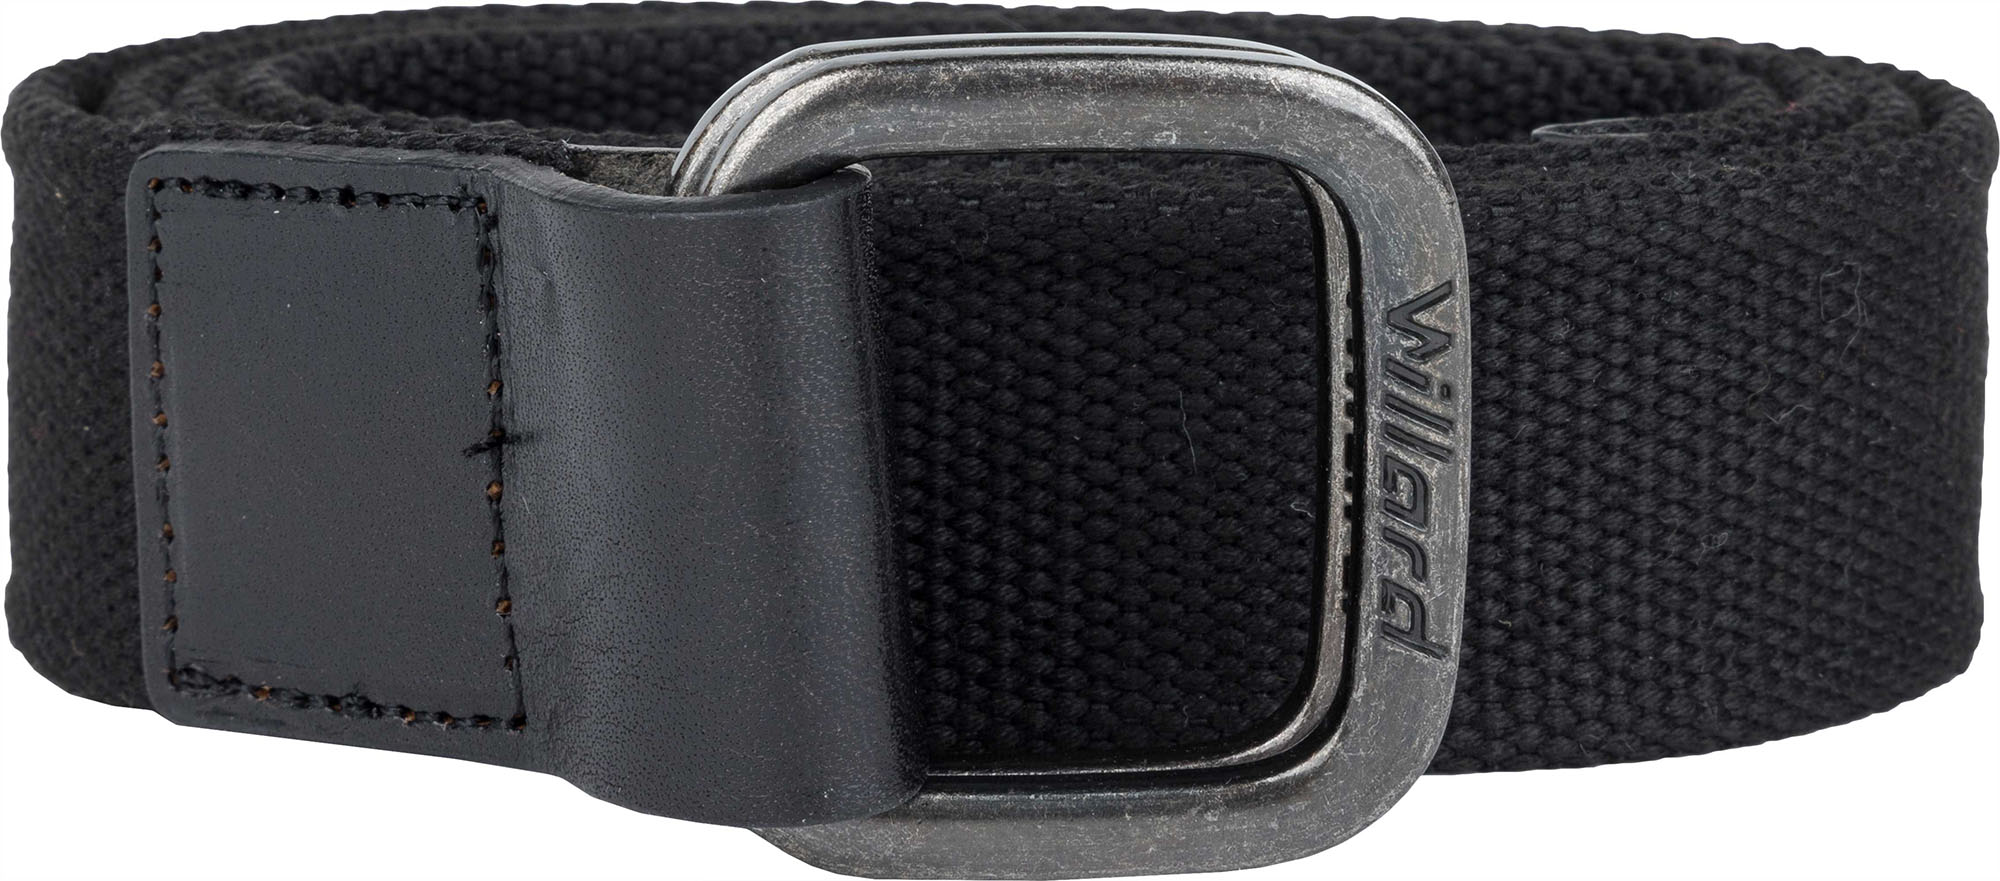 Men’s belt with a metal buckle